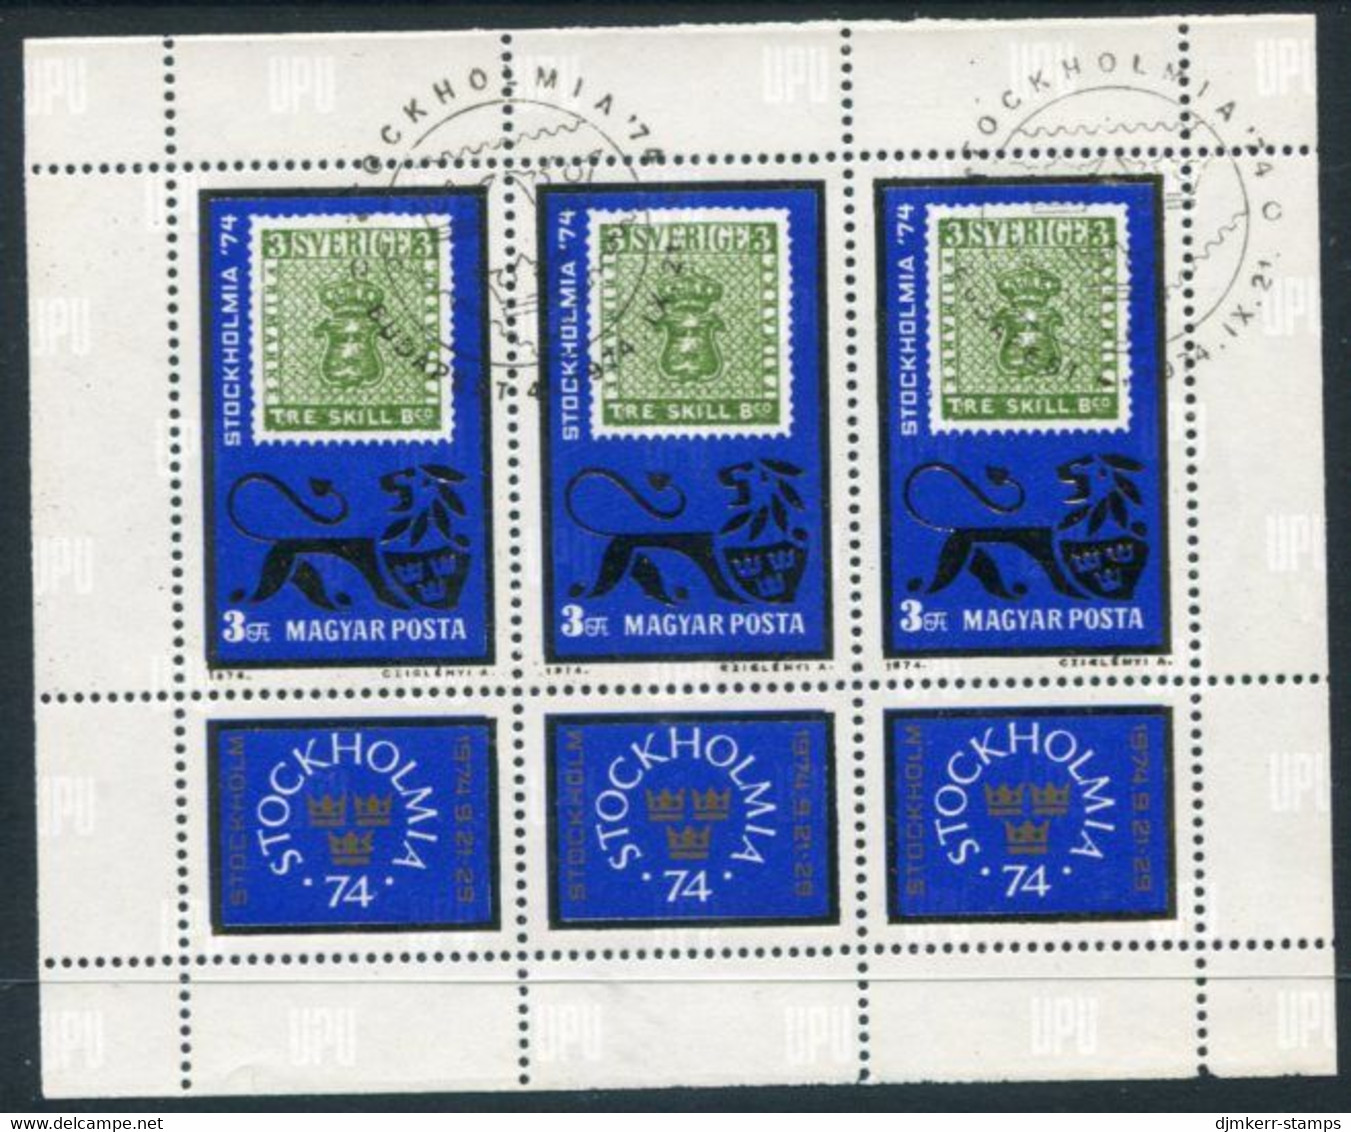 HUNGARY 1974 STOCKHOLMIA Stamp Exhibition Sheetlet Used.  Michel 2981 Kb - Blokken & Velletjes